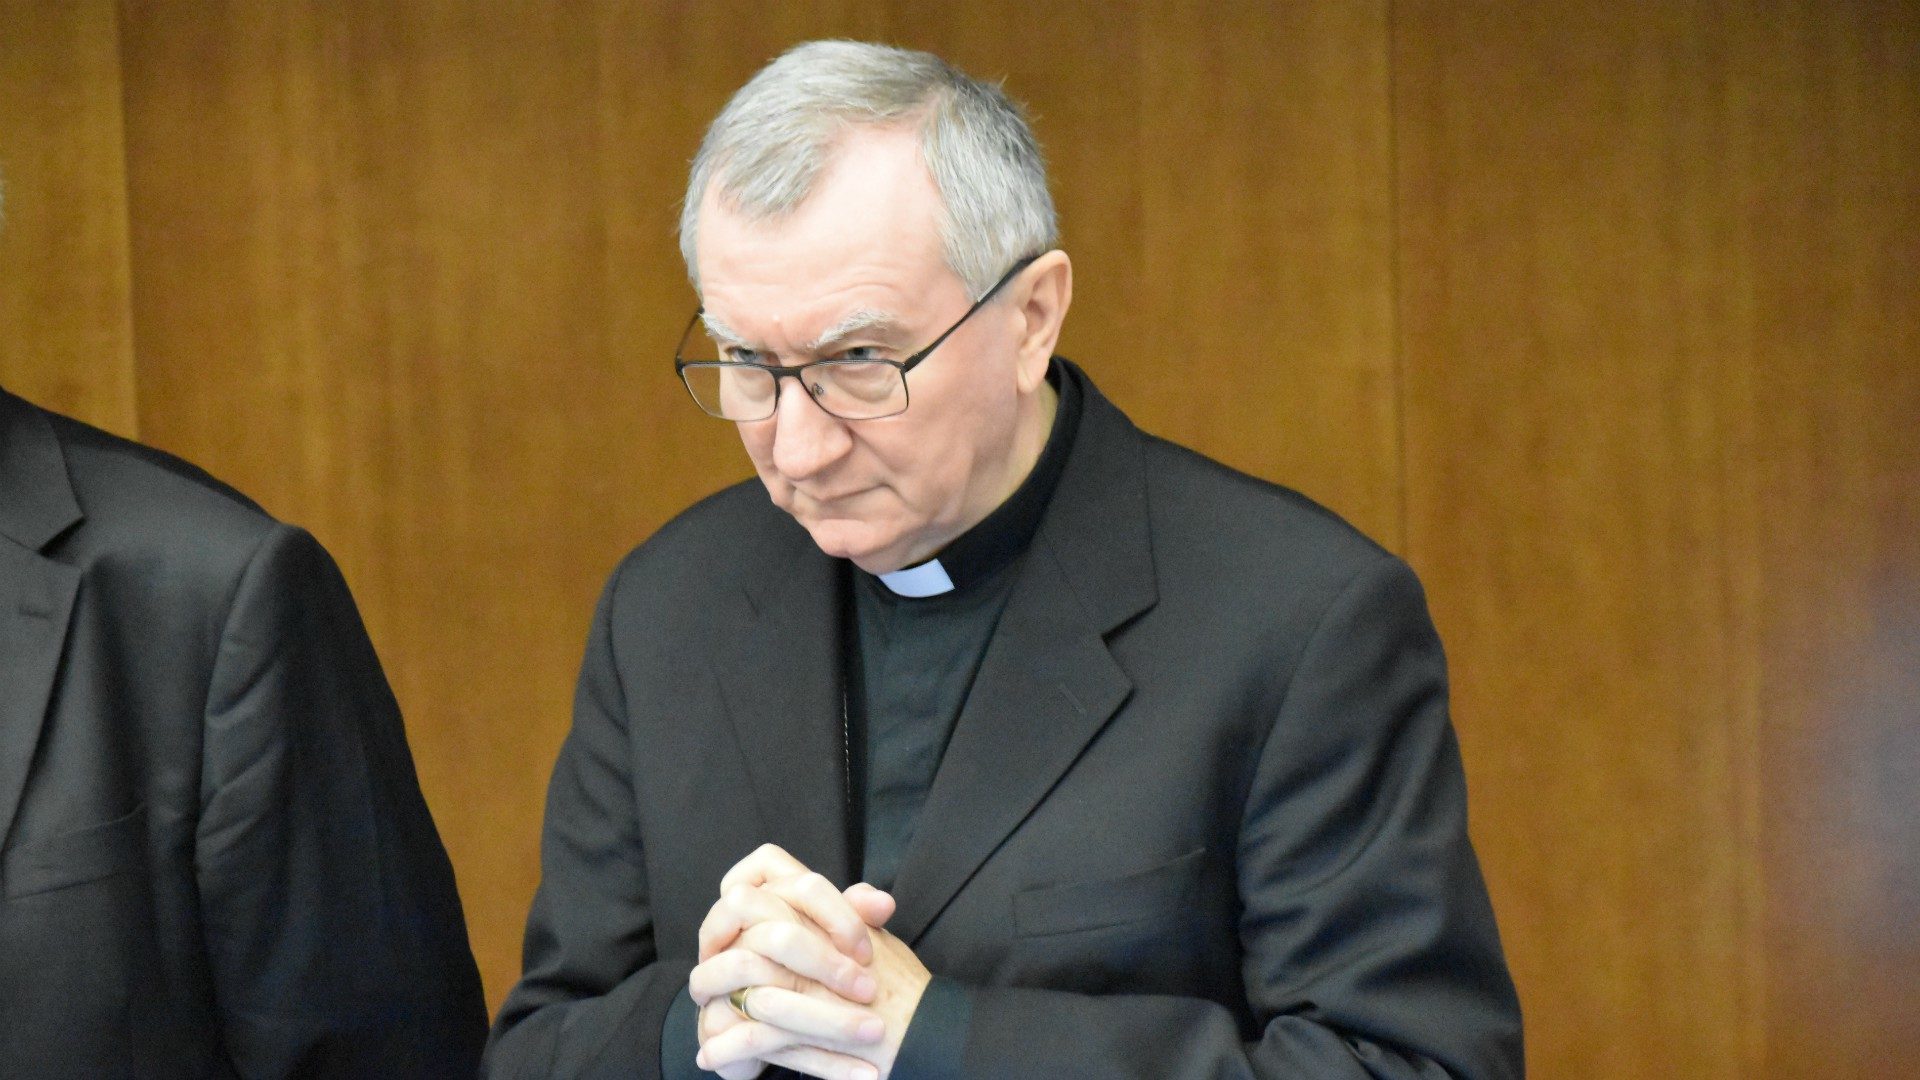 Le cardinal Pietro Parolin incite la communauté internationale à agir en faveur des victimes de la traite humaine | © Jacques Berset